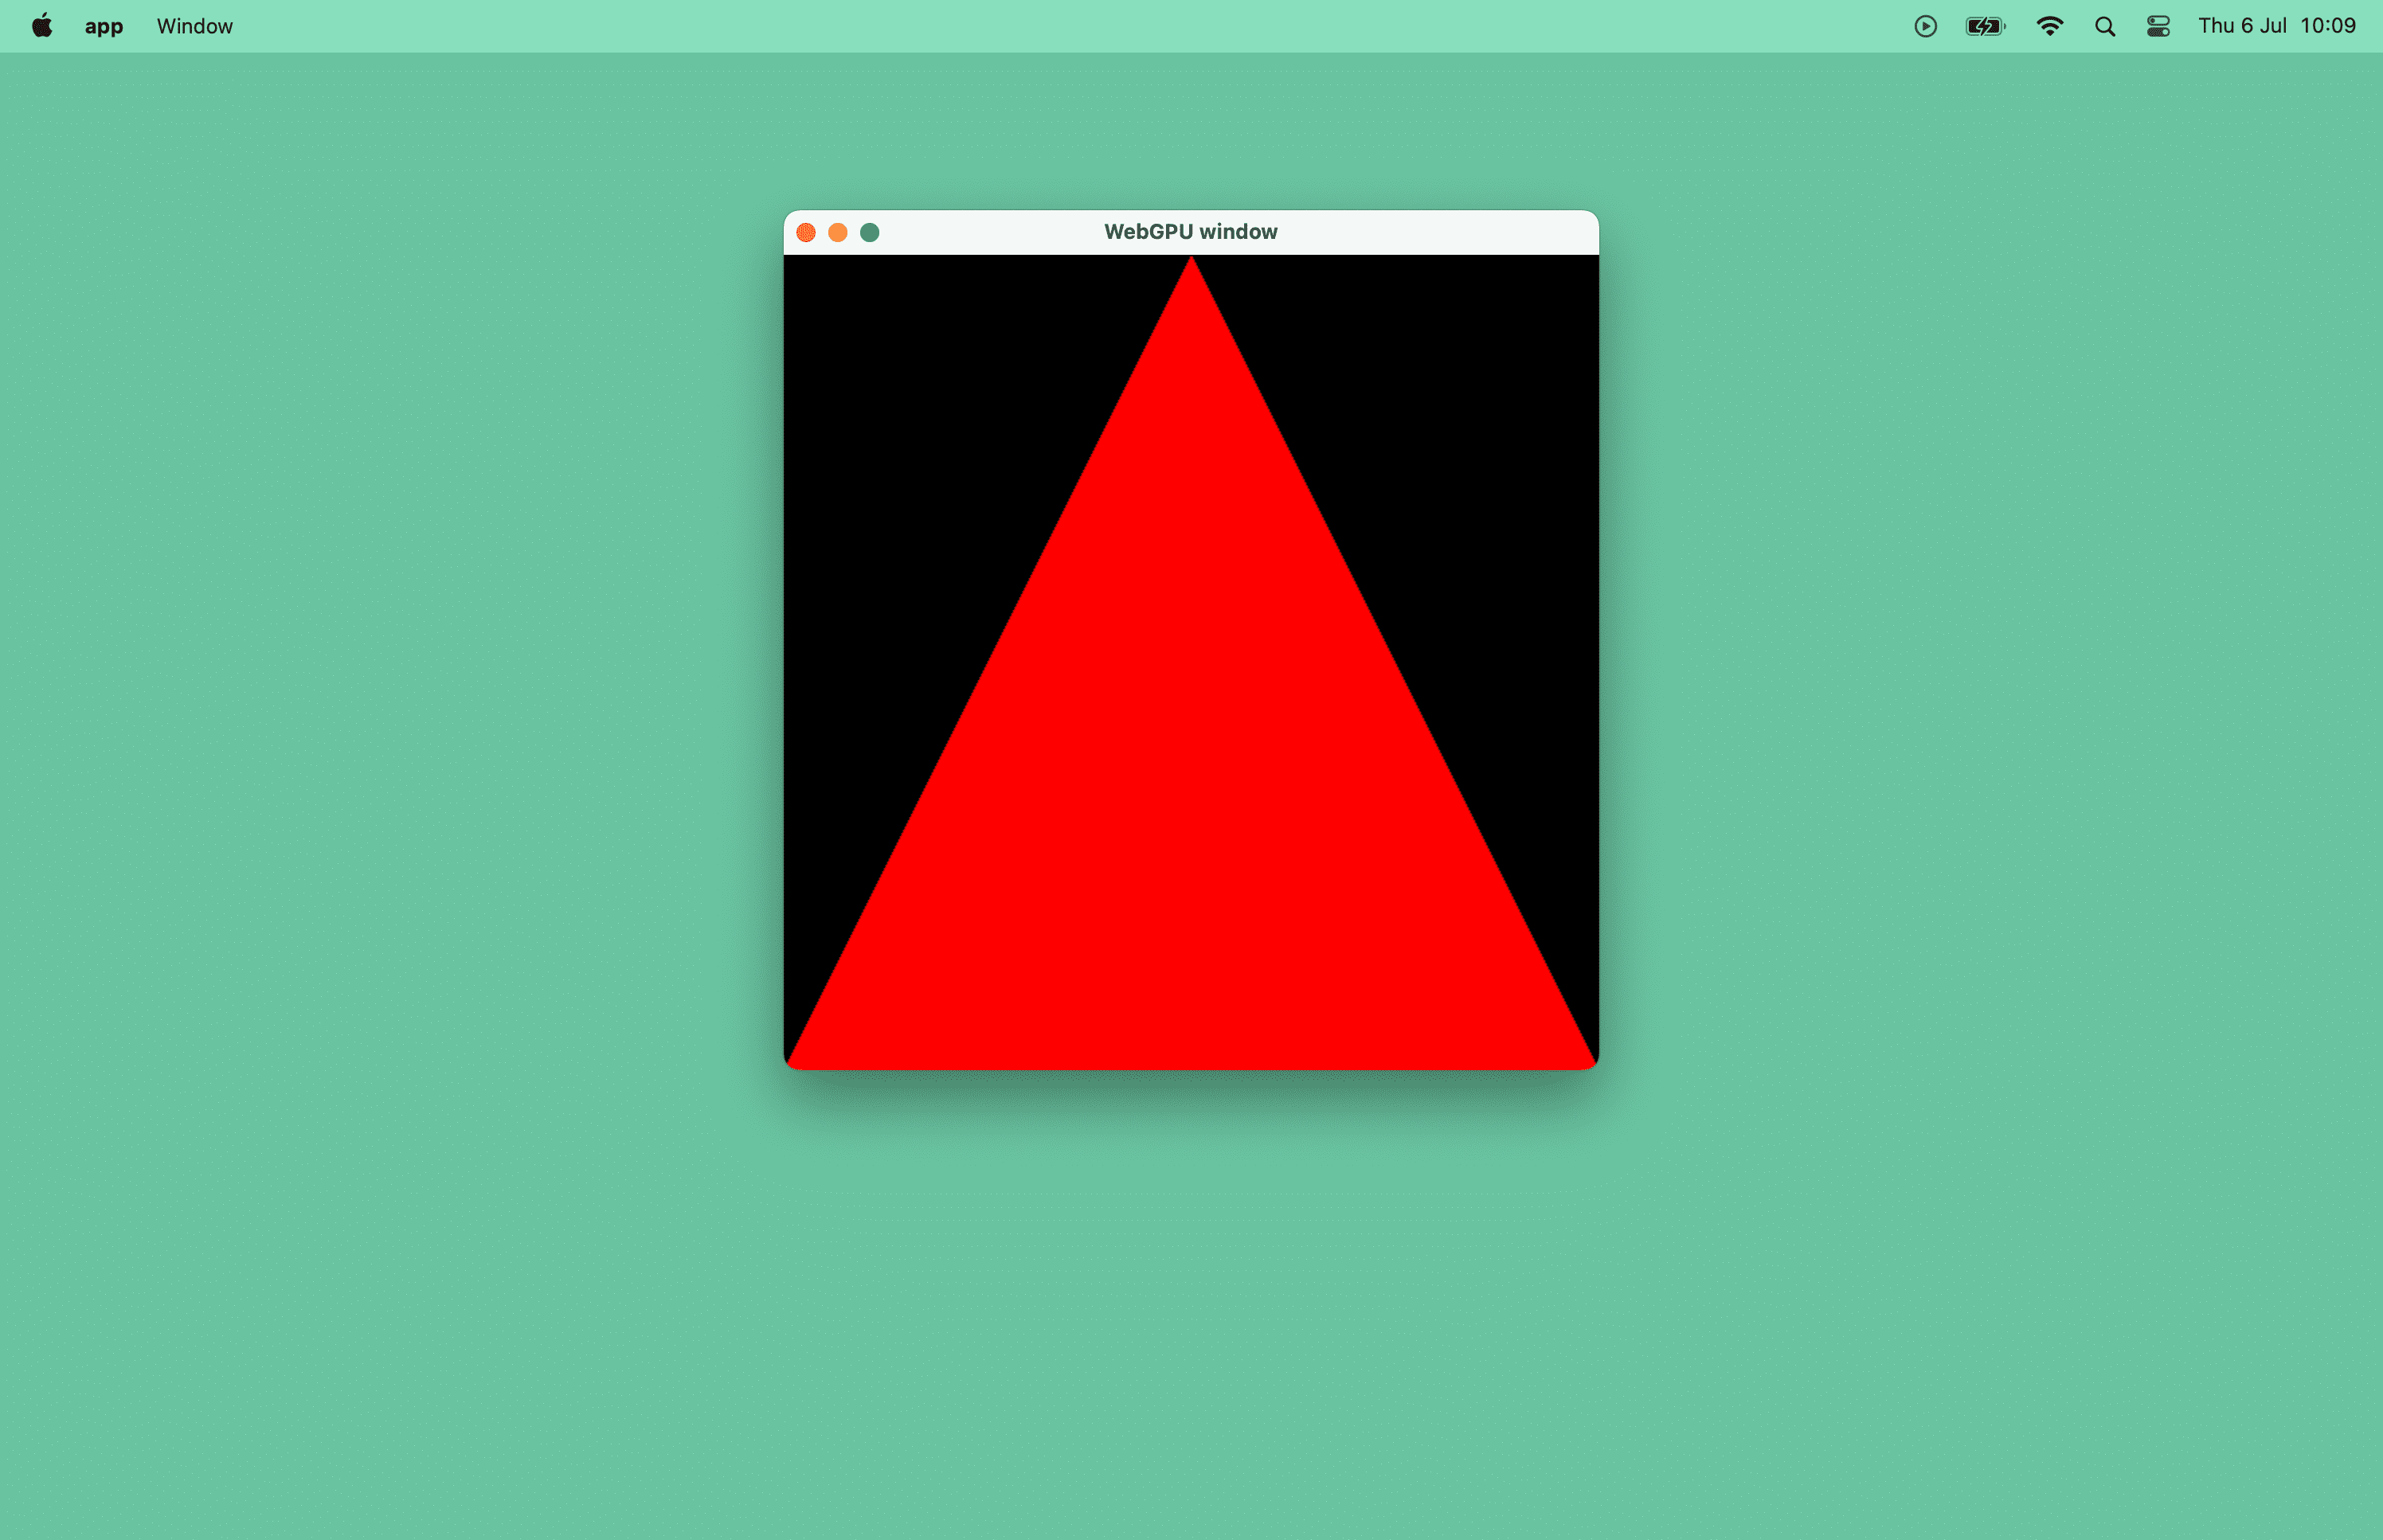 Screenshot eines roten Dreiecks in einem macOS-Fenster.